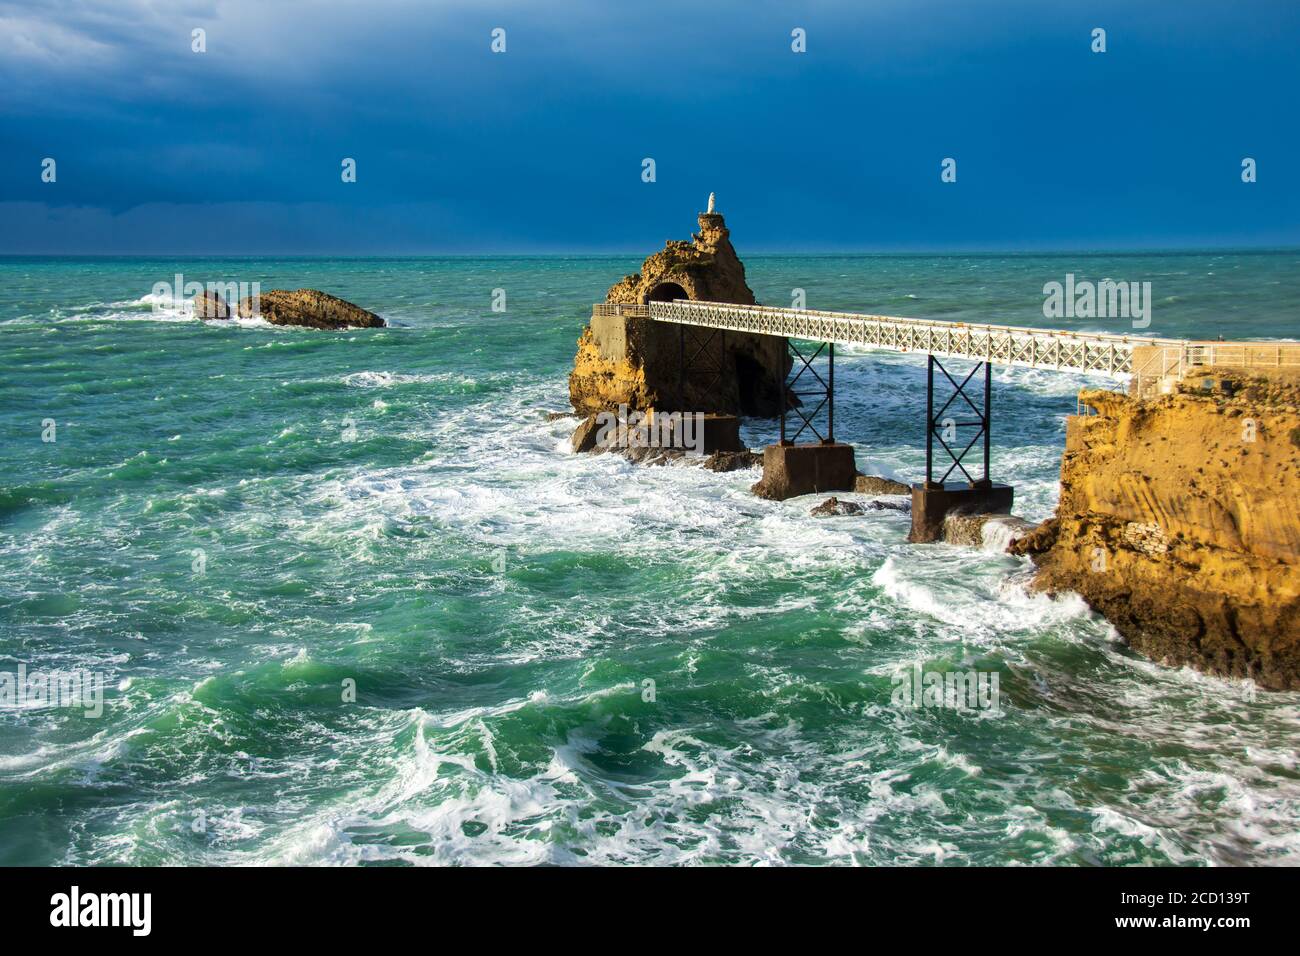 Biarritz's 'Rocher de la Vierge' (Rock of the Virgin) before the storm. Biarritz, France Stock Photo